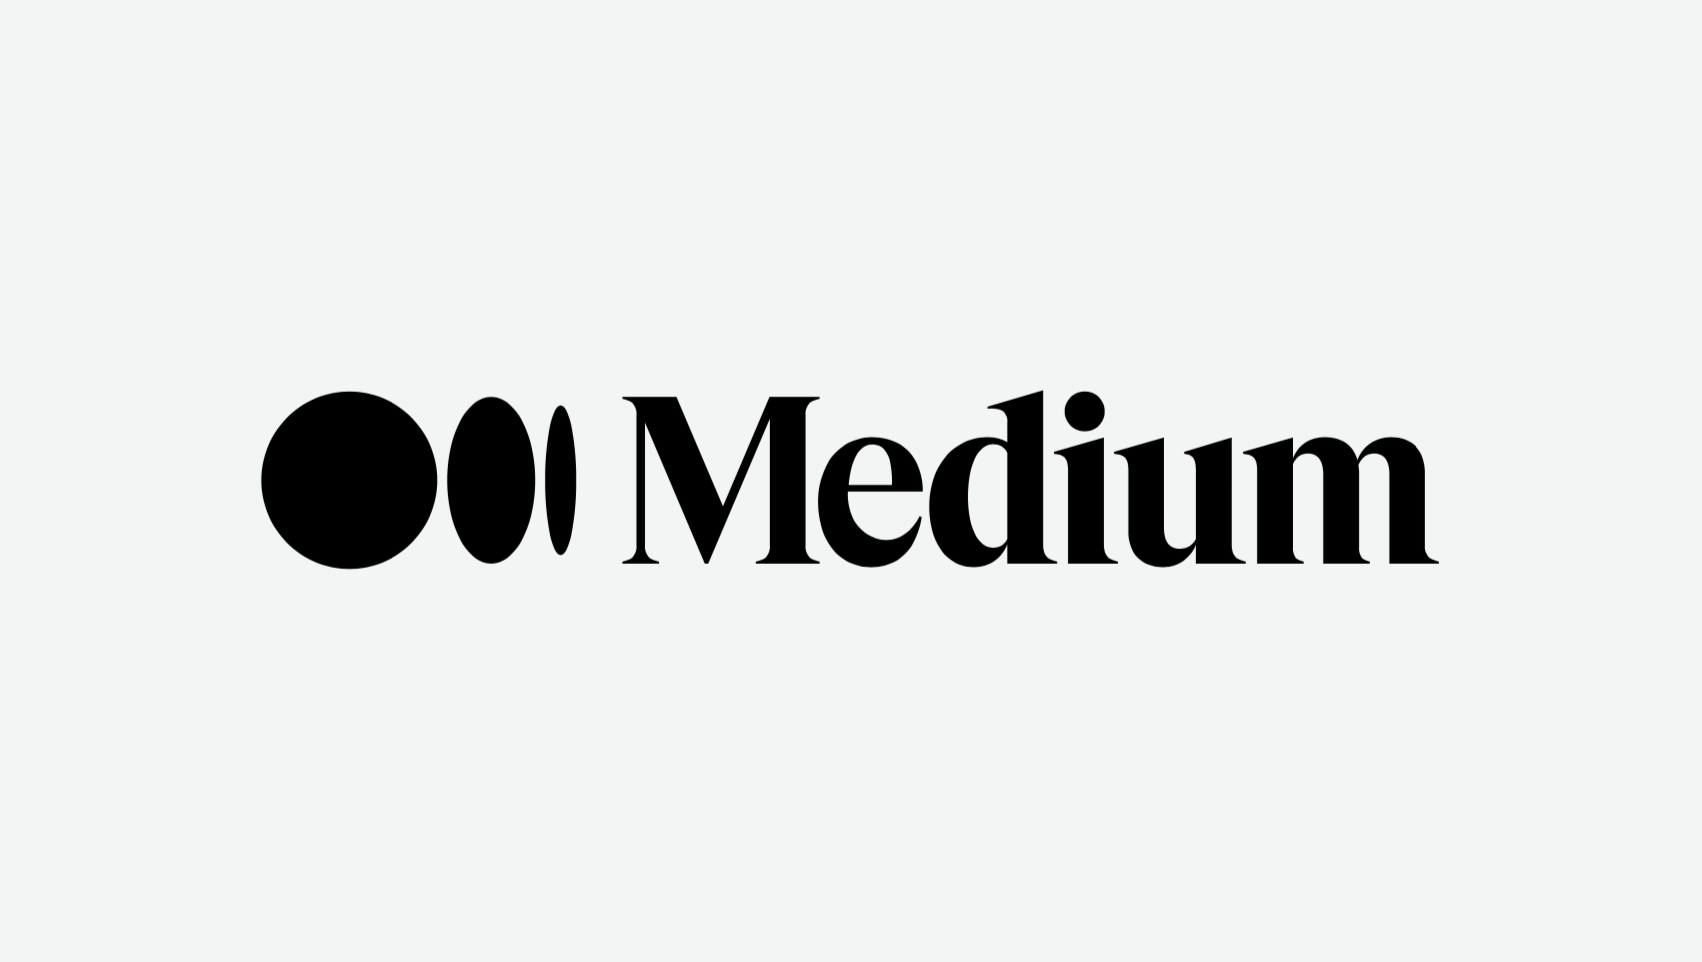 출처: https://medium.com/blogging-guide/mediums-new-logo-2020-unfinished-ellipses-logomark-e24c059871e7